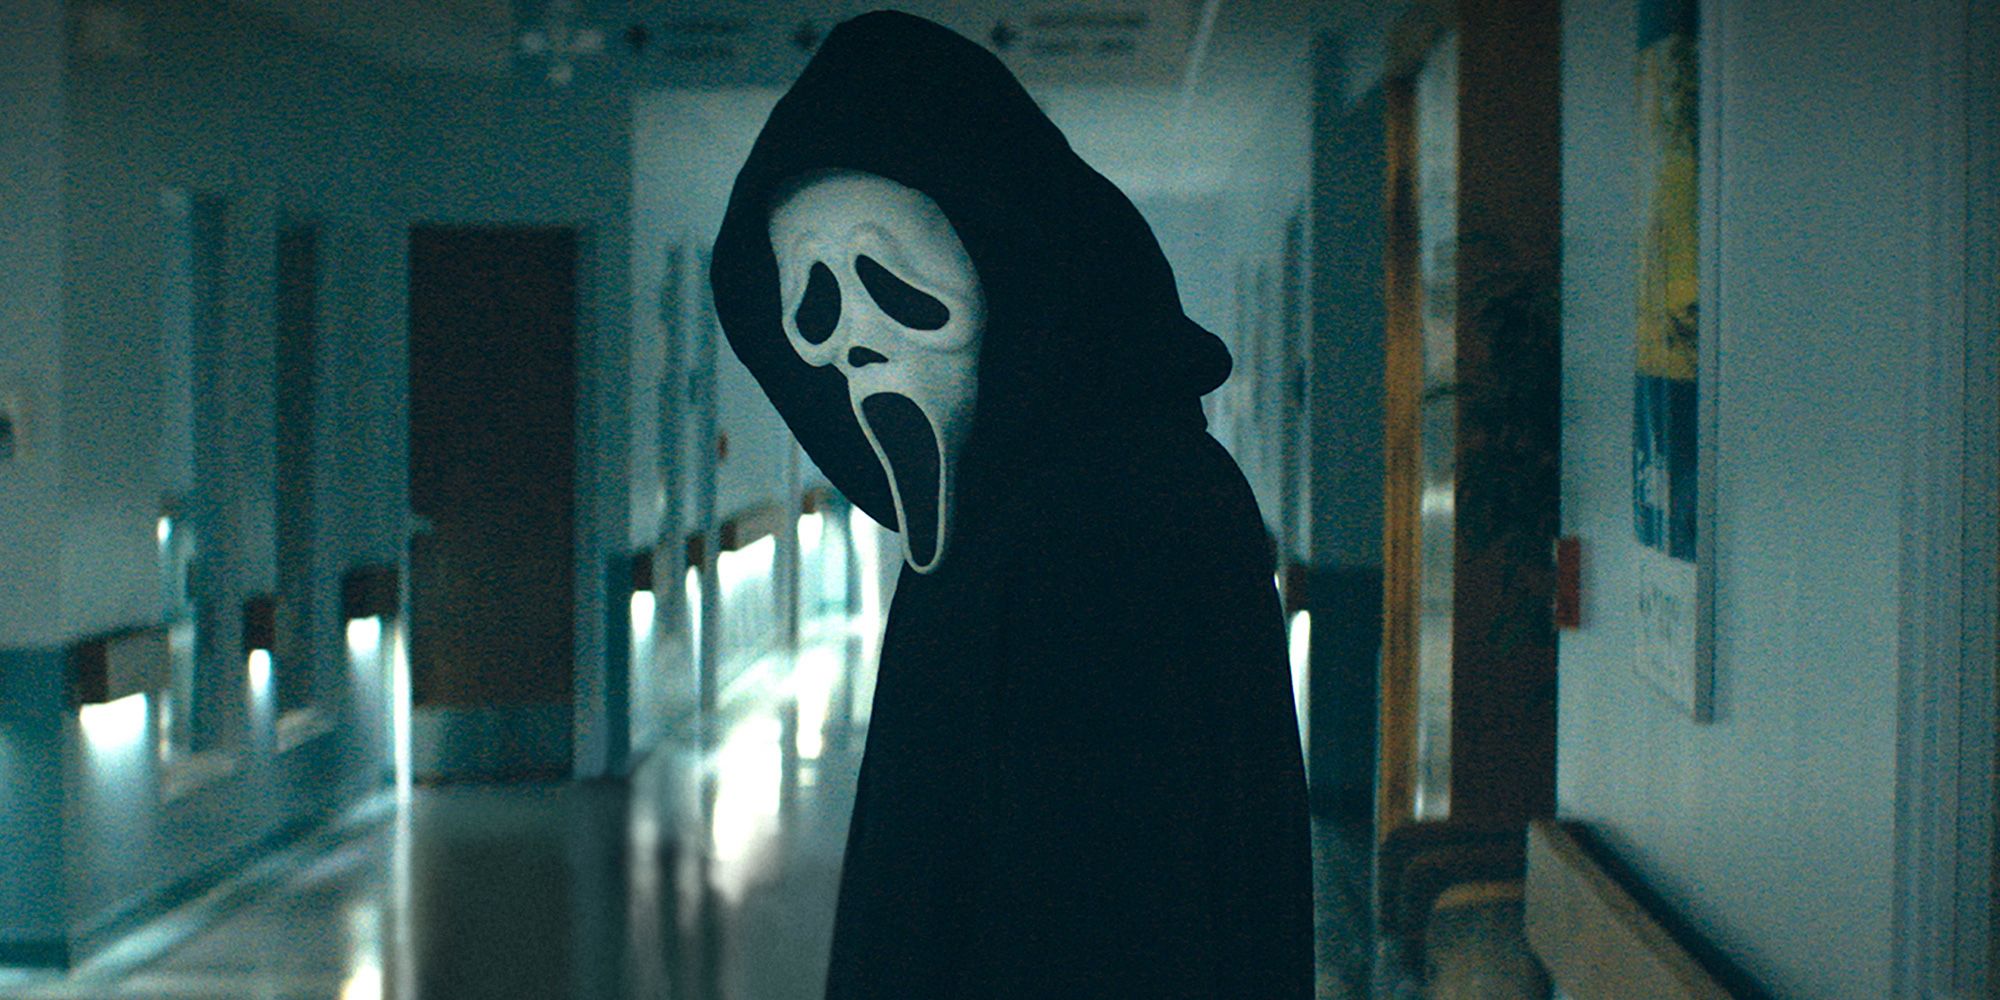 Scream (2022) Review